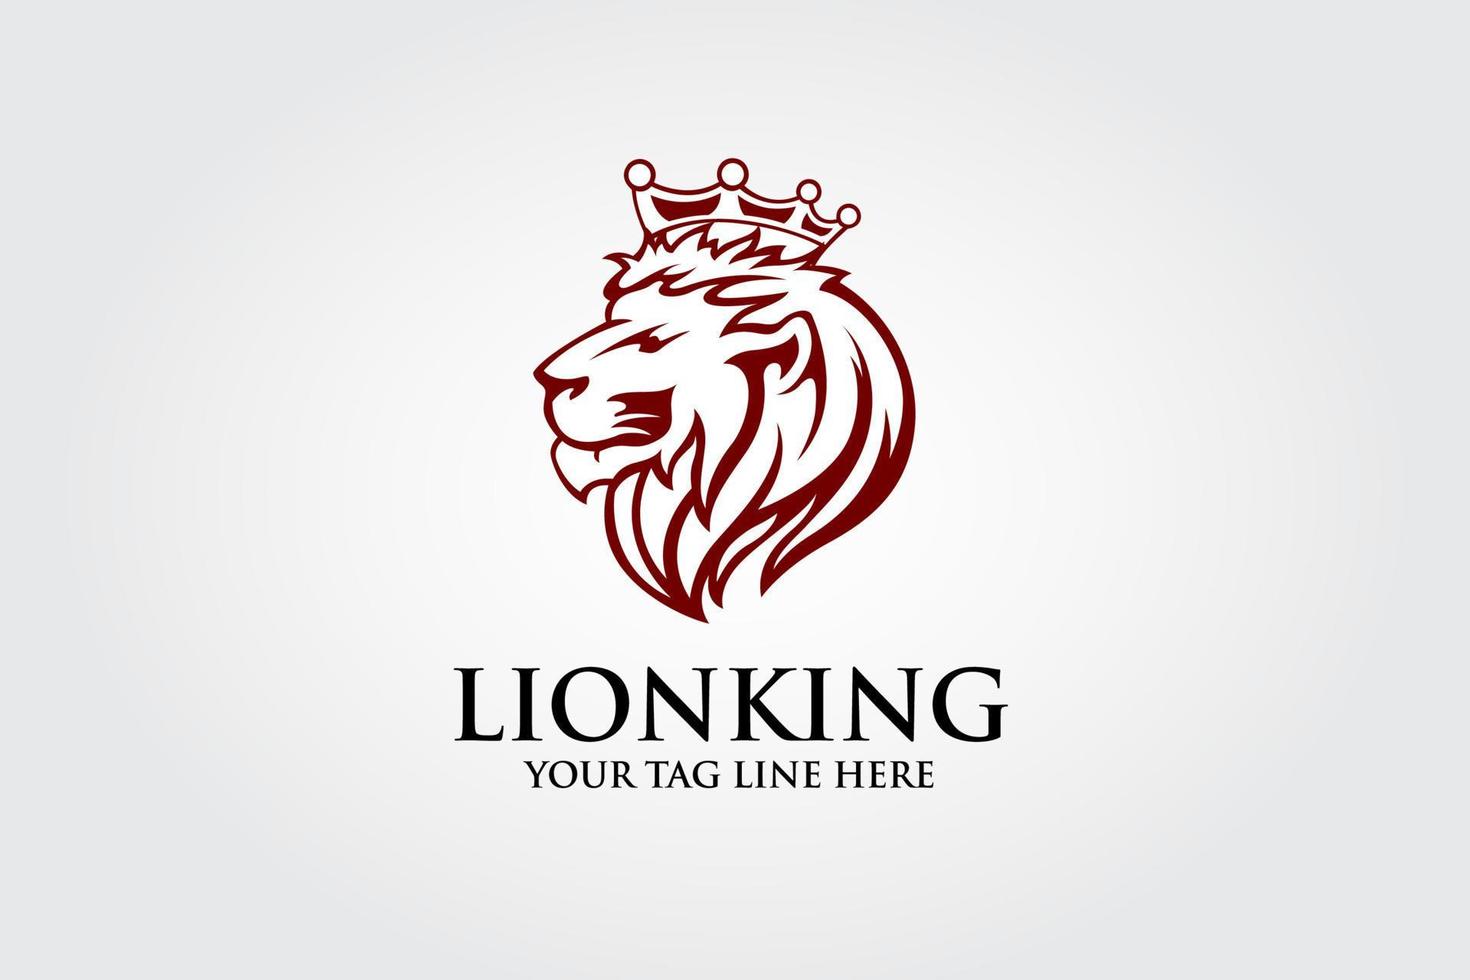 Löwenkopf-Logo-Design-Vorlage, Element für die Markenidentität, Vektorillustration, Emblem-Design auf weißem Hintergrund. vektor